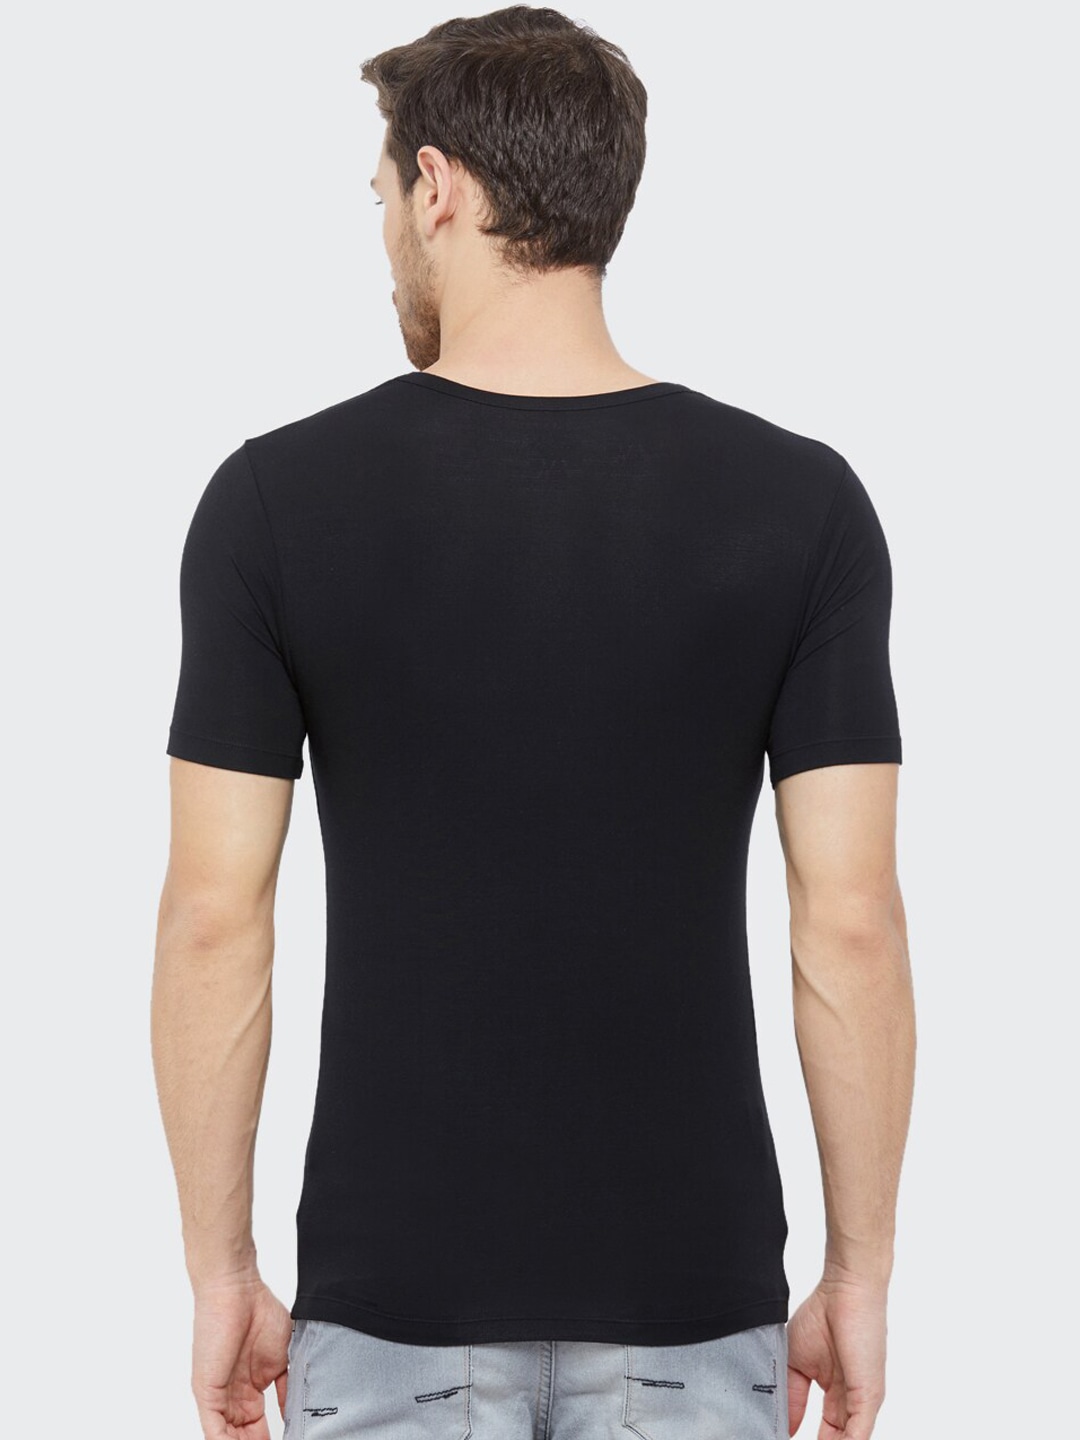 Clothing Innerwear Vests | Almo Wear Men Black Micro Round Neck Undershirt Vest - PR06701